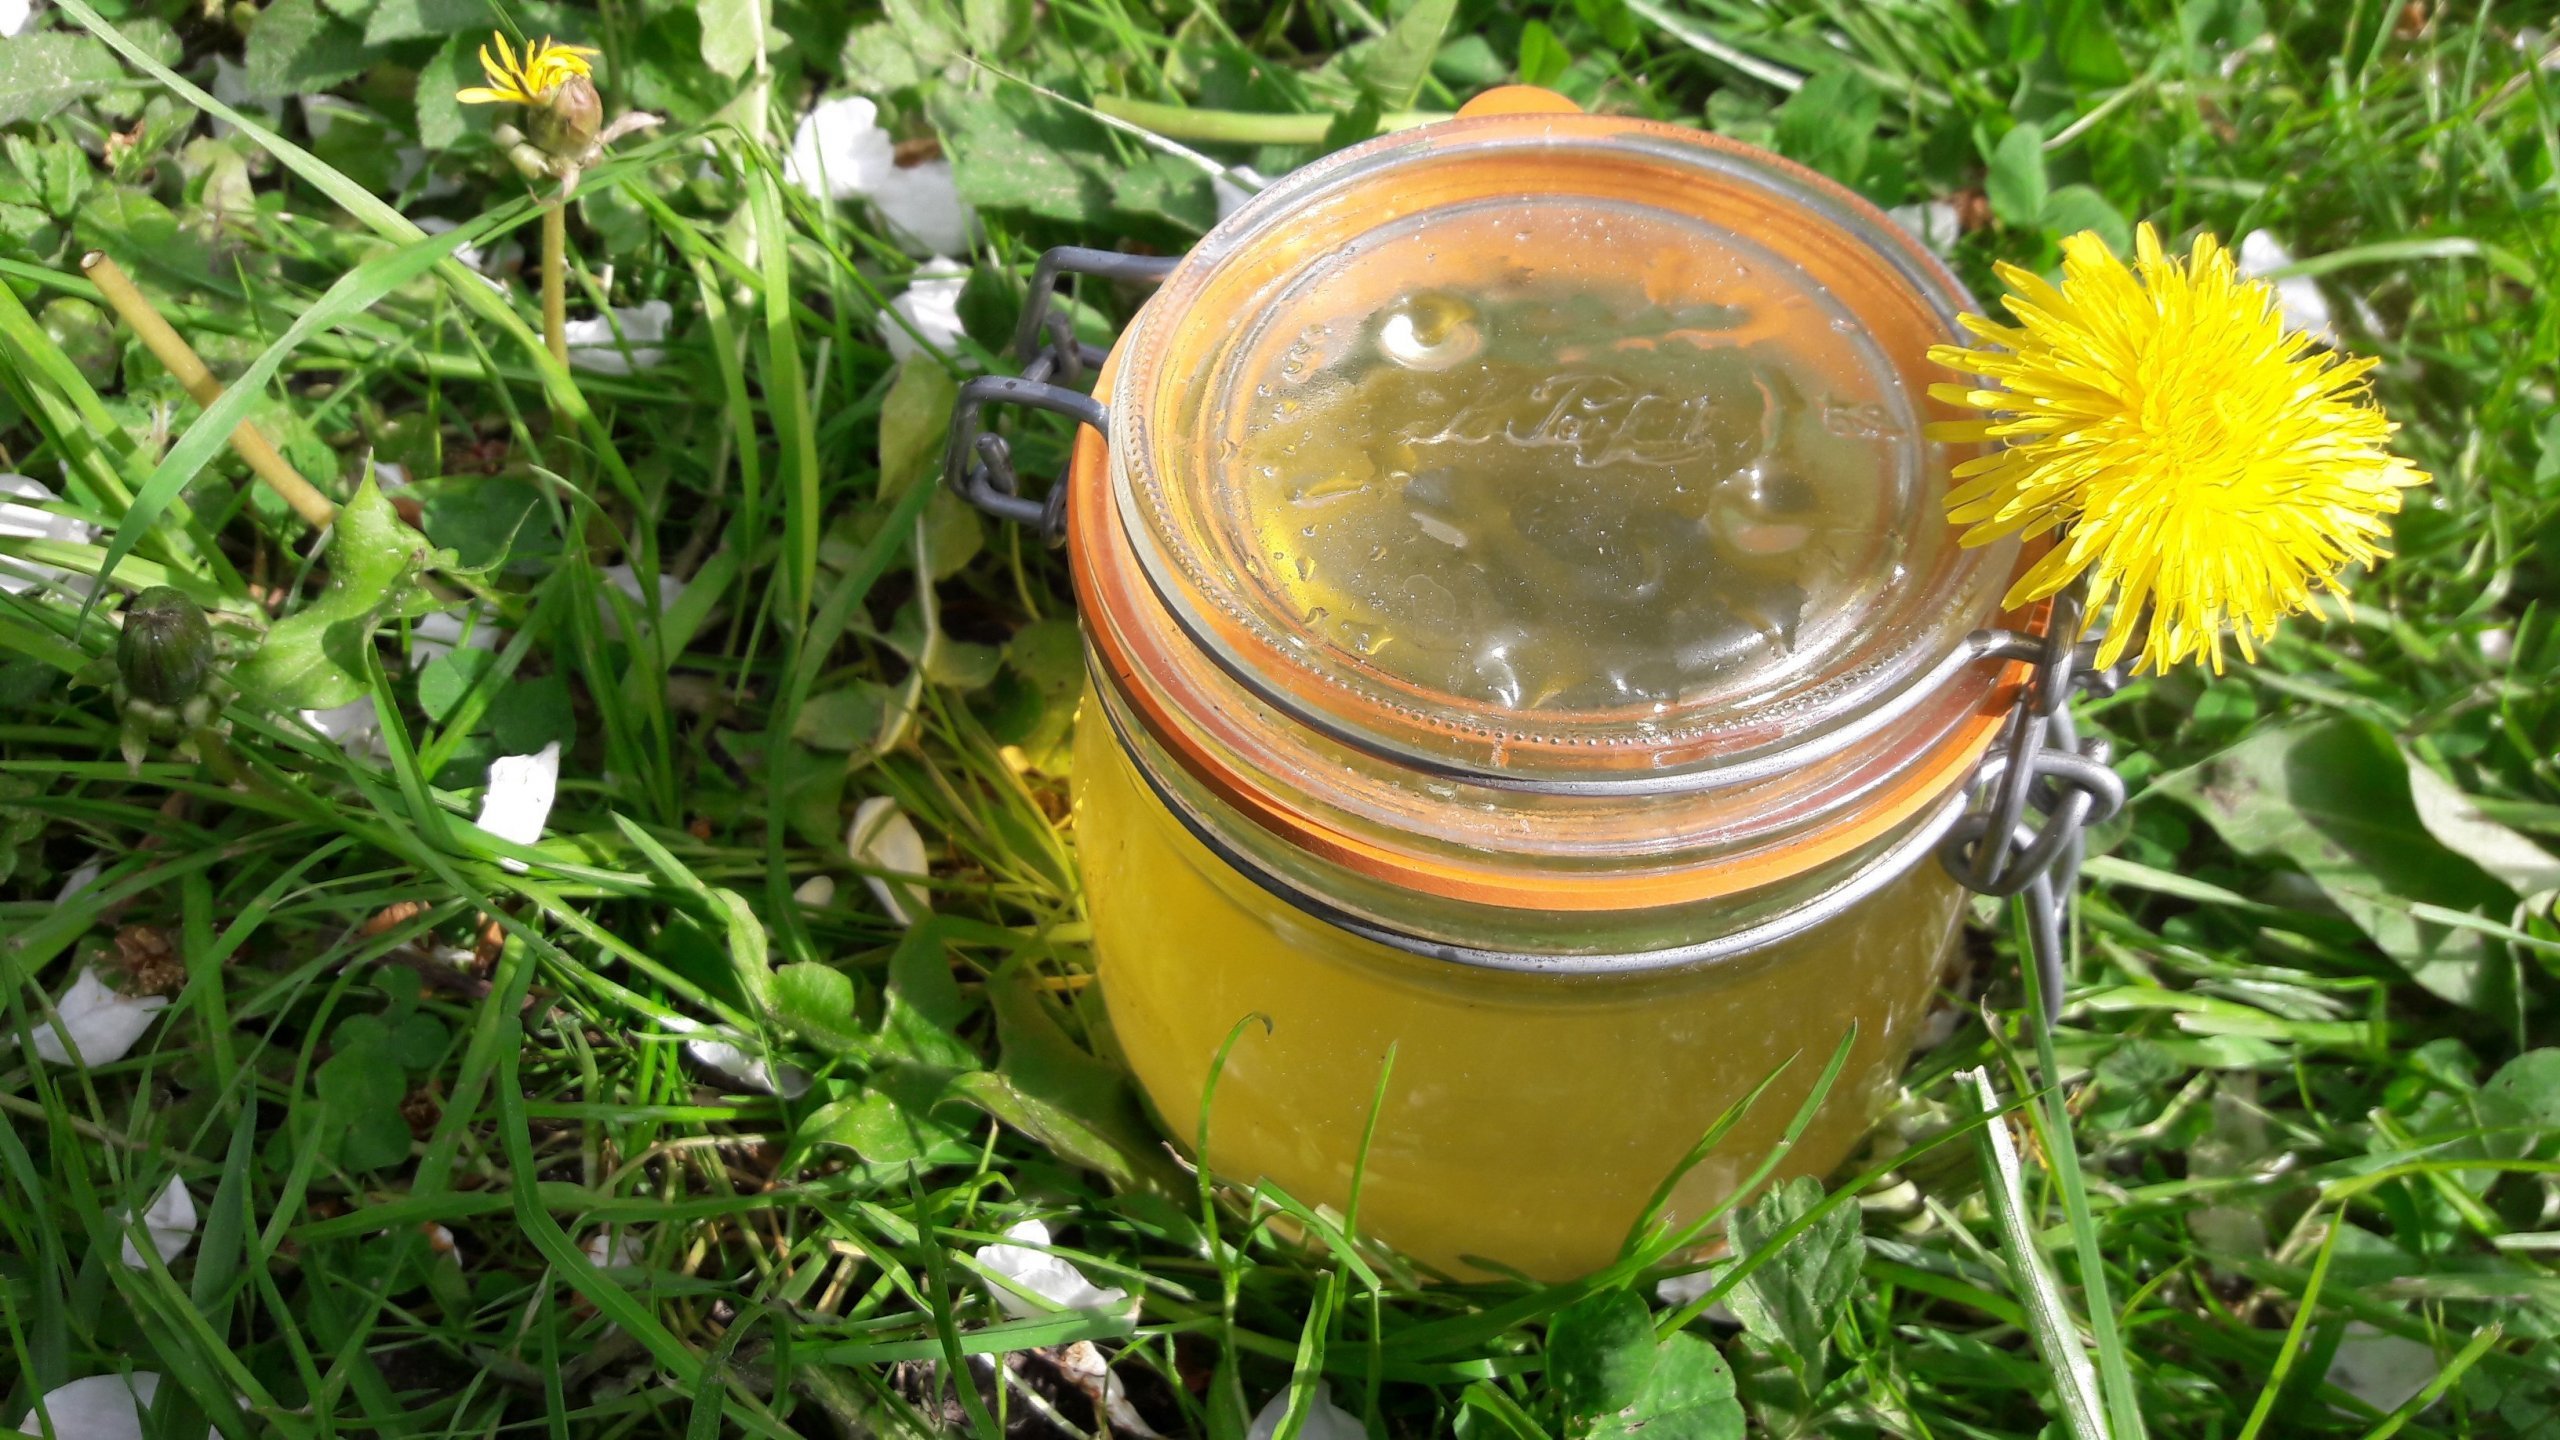 Pampeliškový med neboli zakonzervované jaro